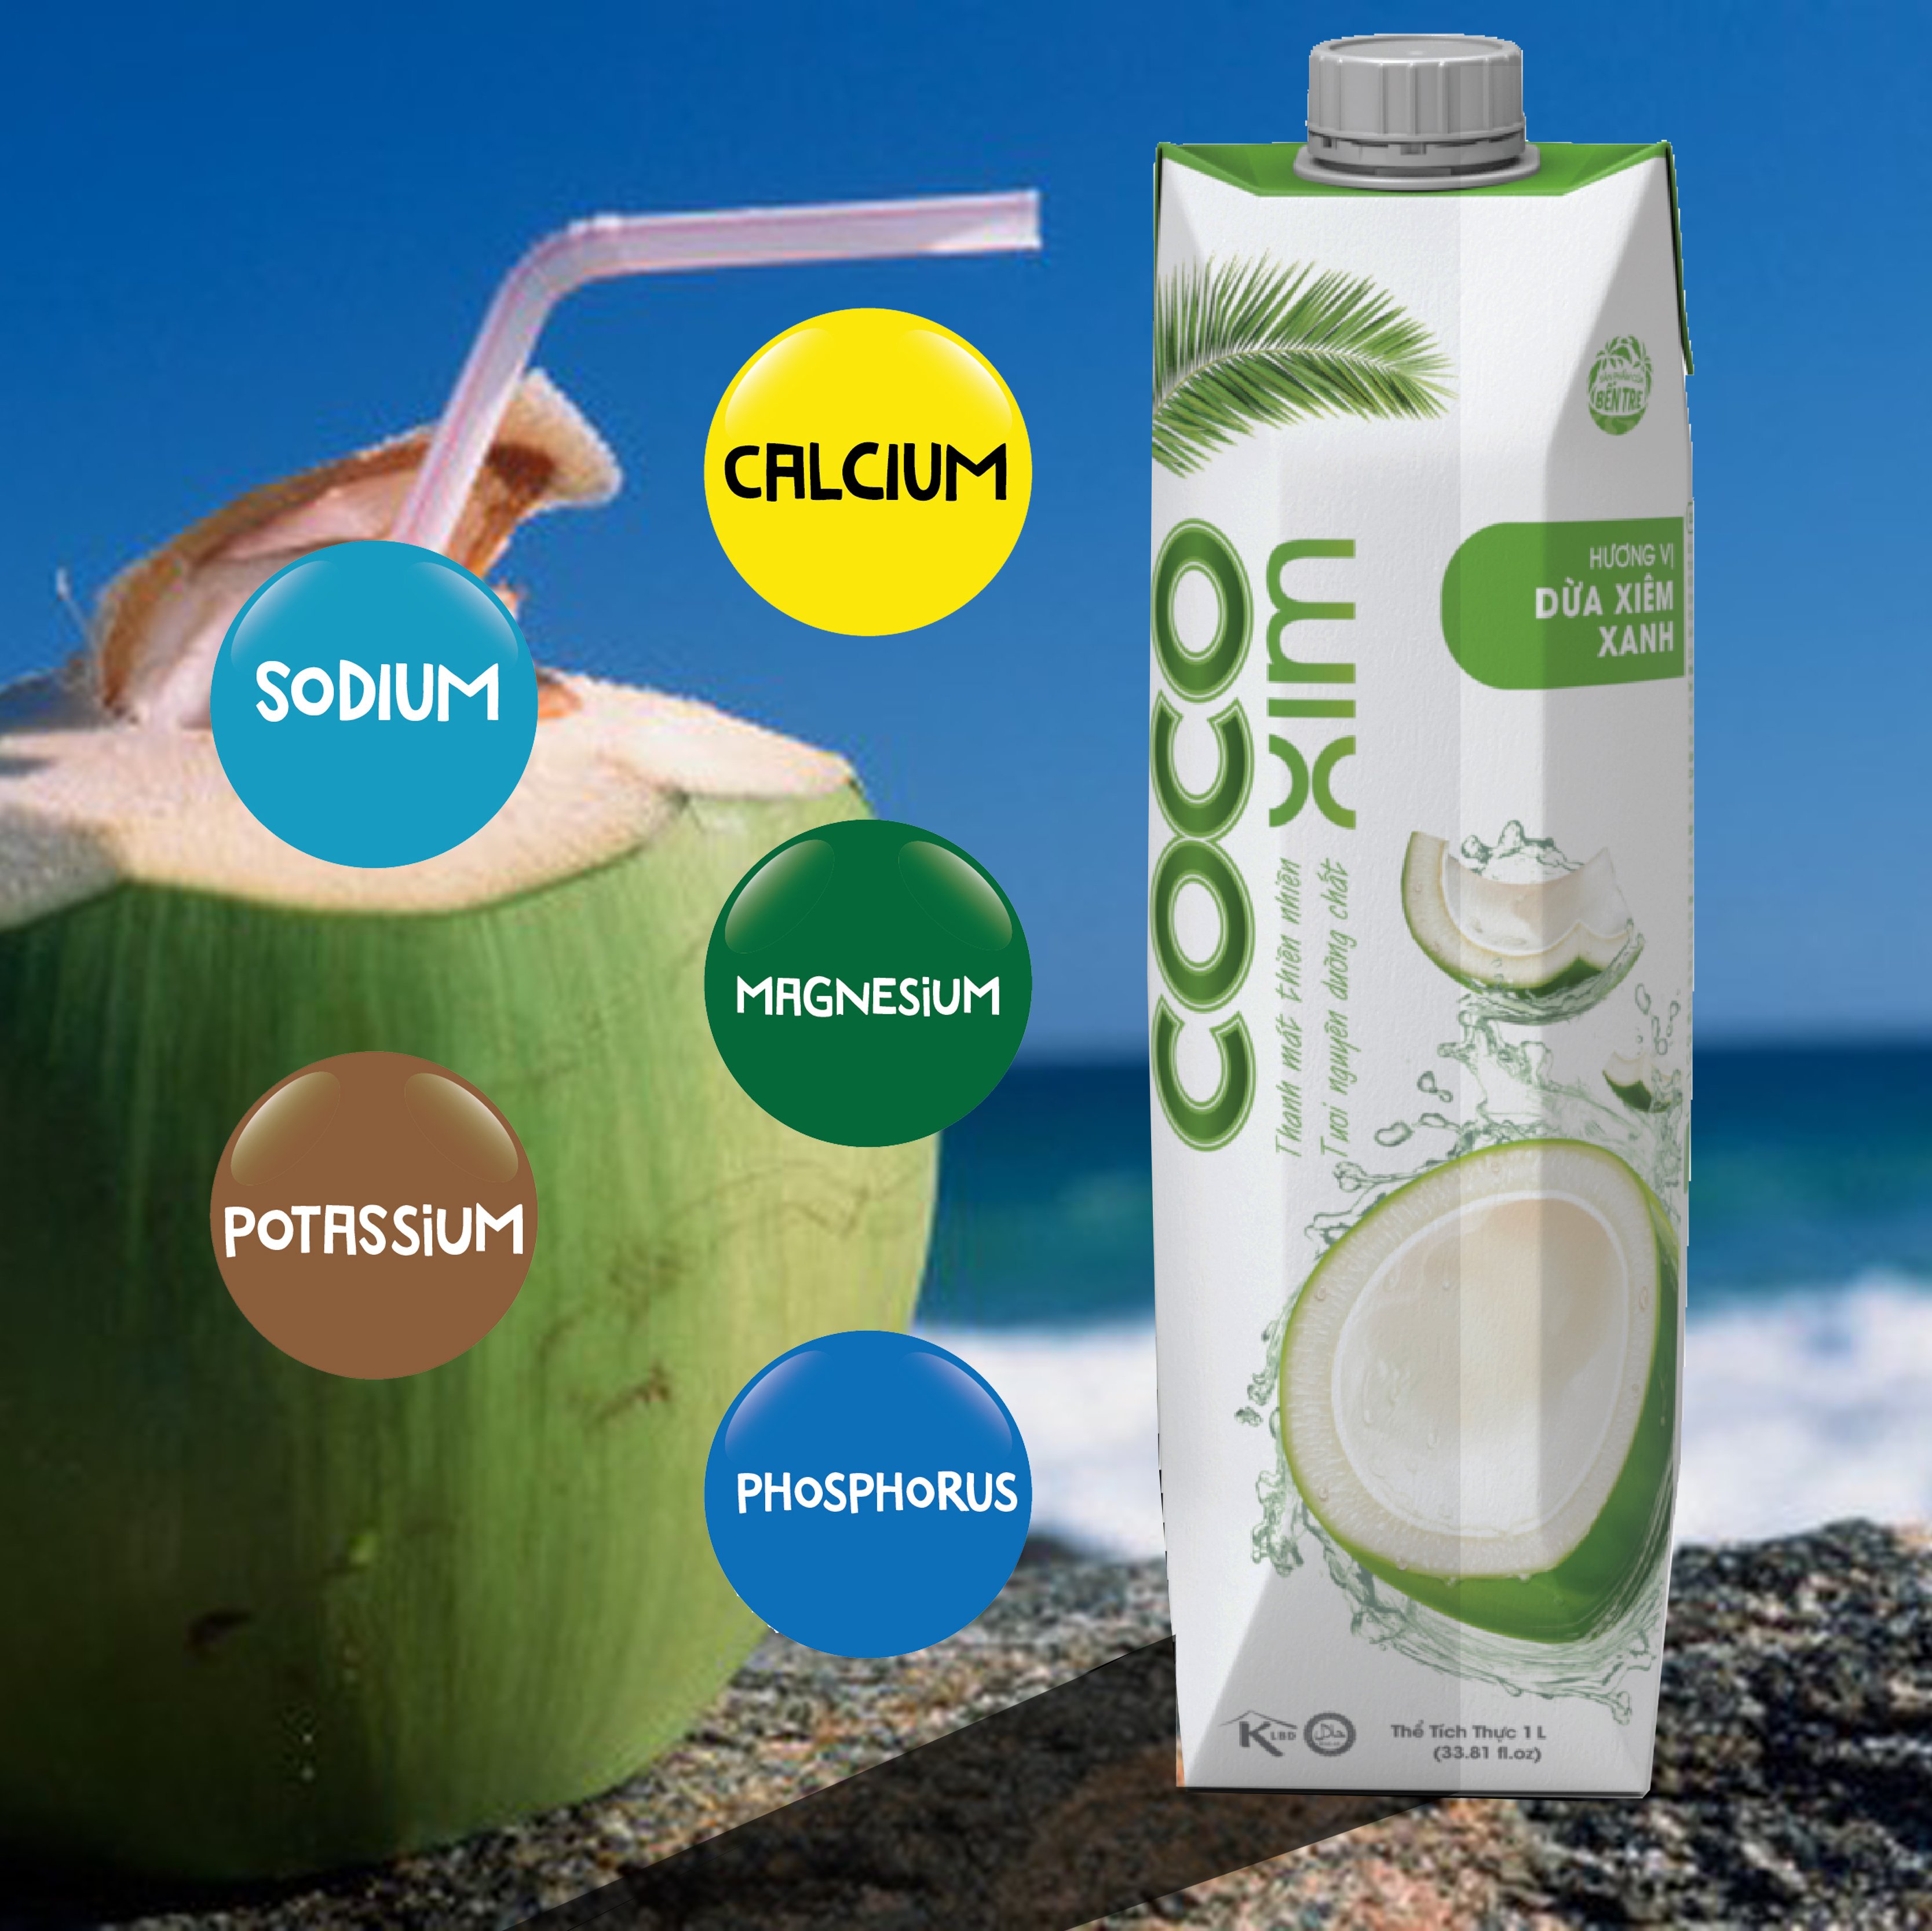 Nước dừa Xiêm xanh 100- dừa tươi nguyên chất Cocoxim Active